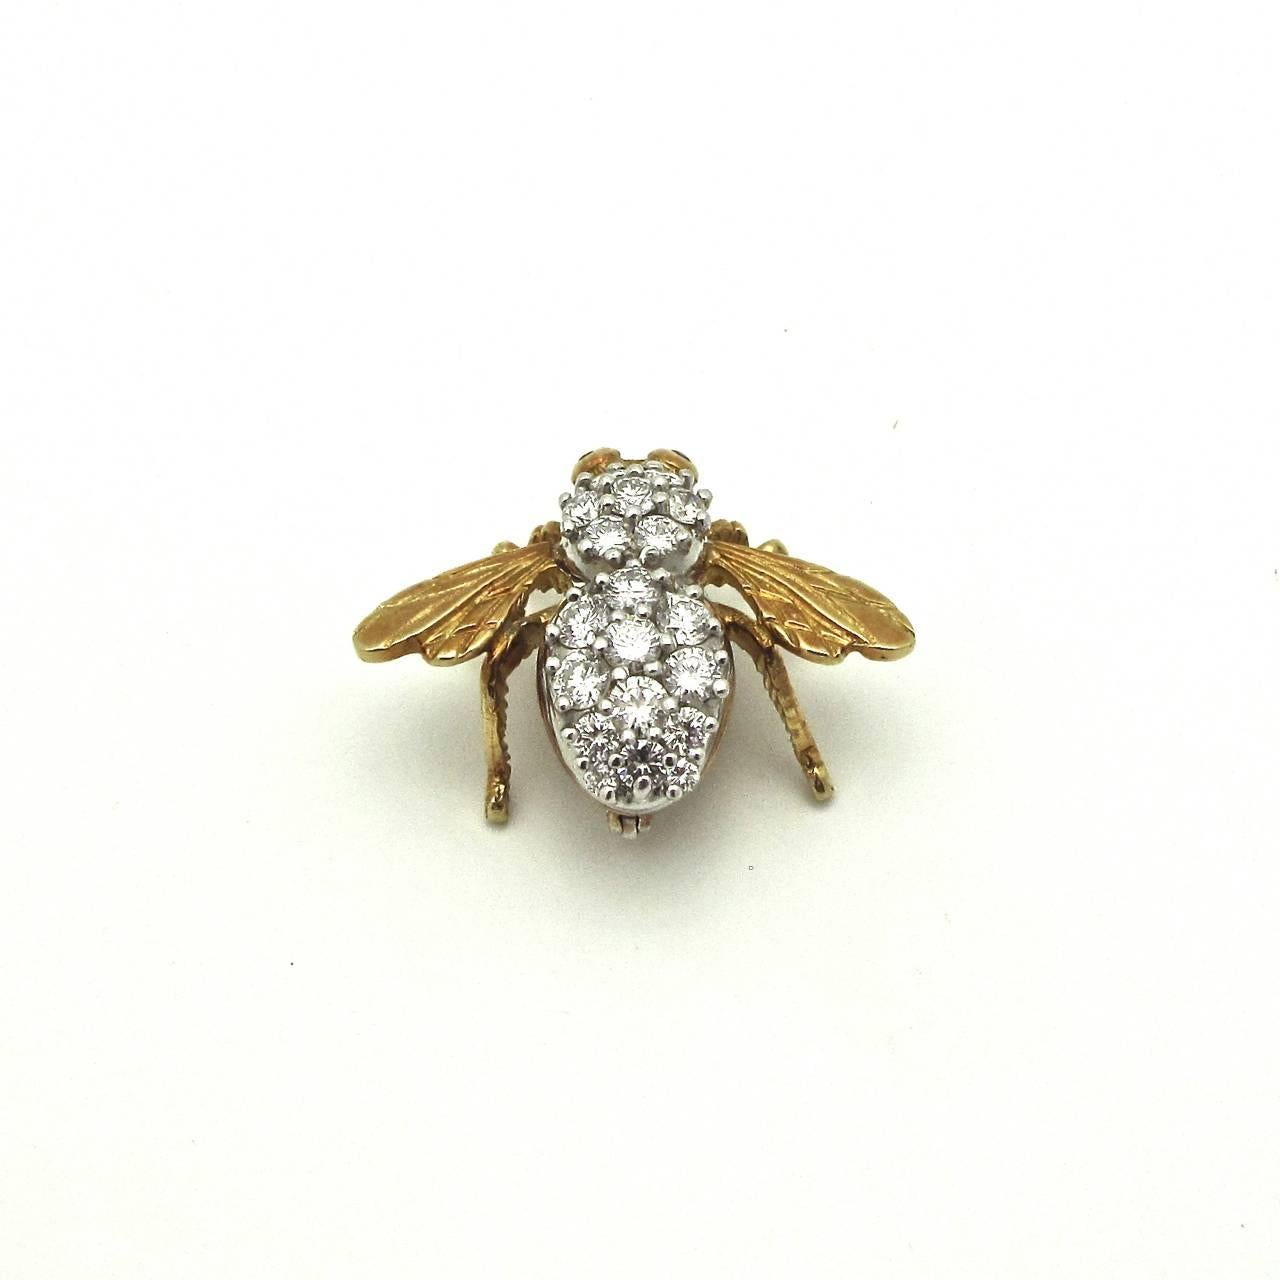 L'abeille incrustée de diamants aux yeux de rubis captivants se pose sur le revers de votre veste ou sur une robe magnifique. Il y a un verrou de sécurité pour que vous n'ayez jamais à vous inquiéter que votre abeille s'envole.....